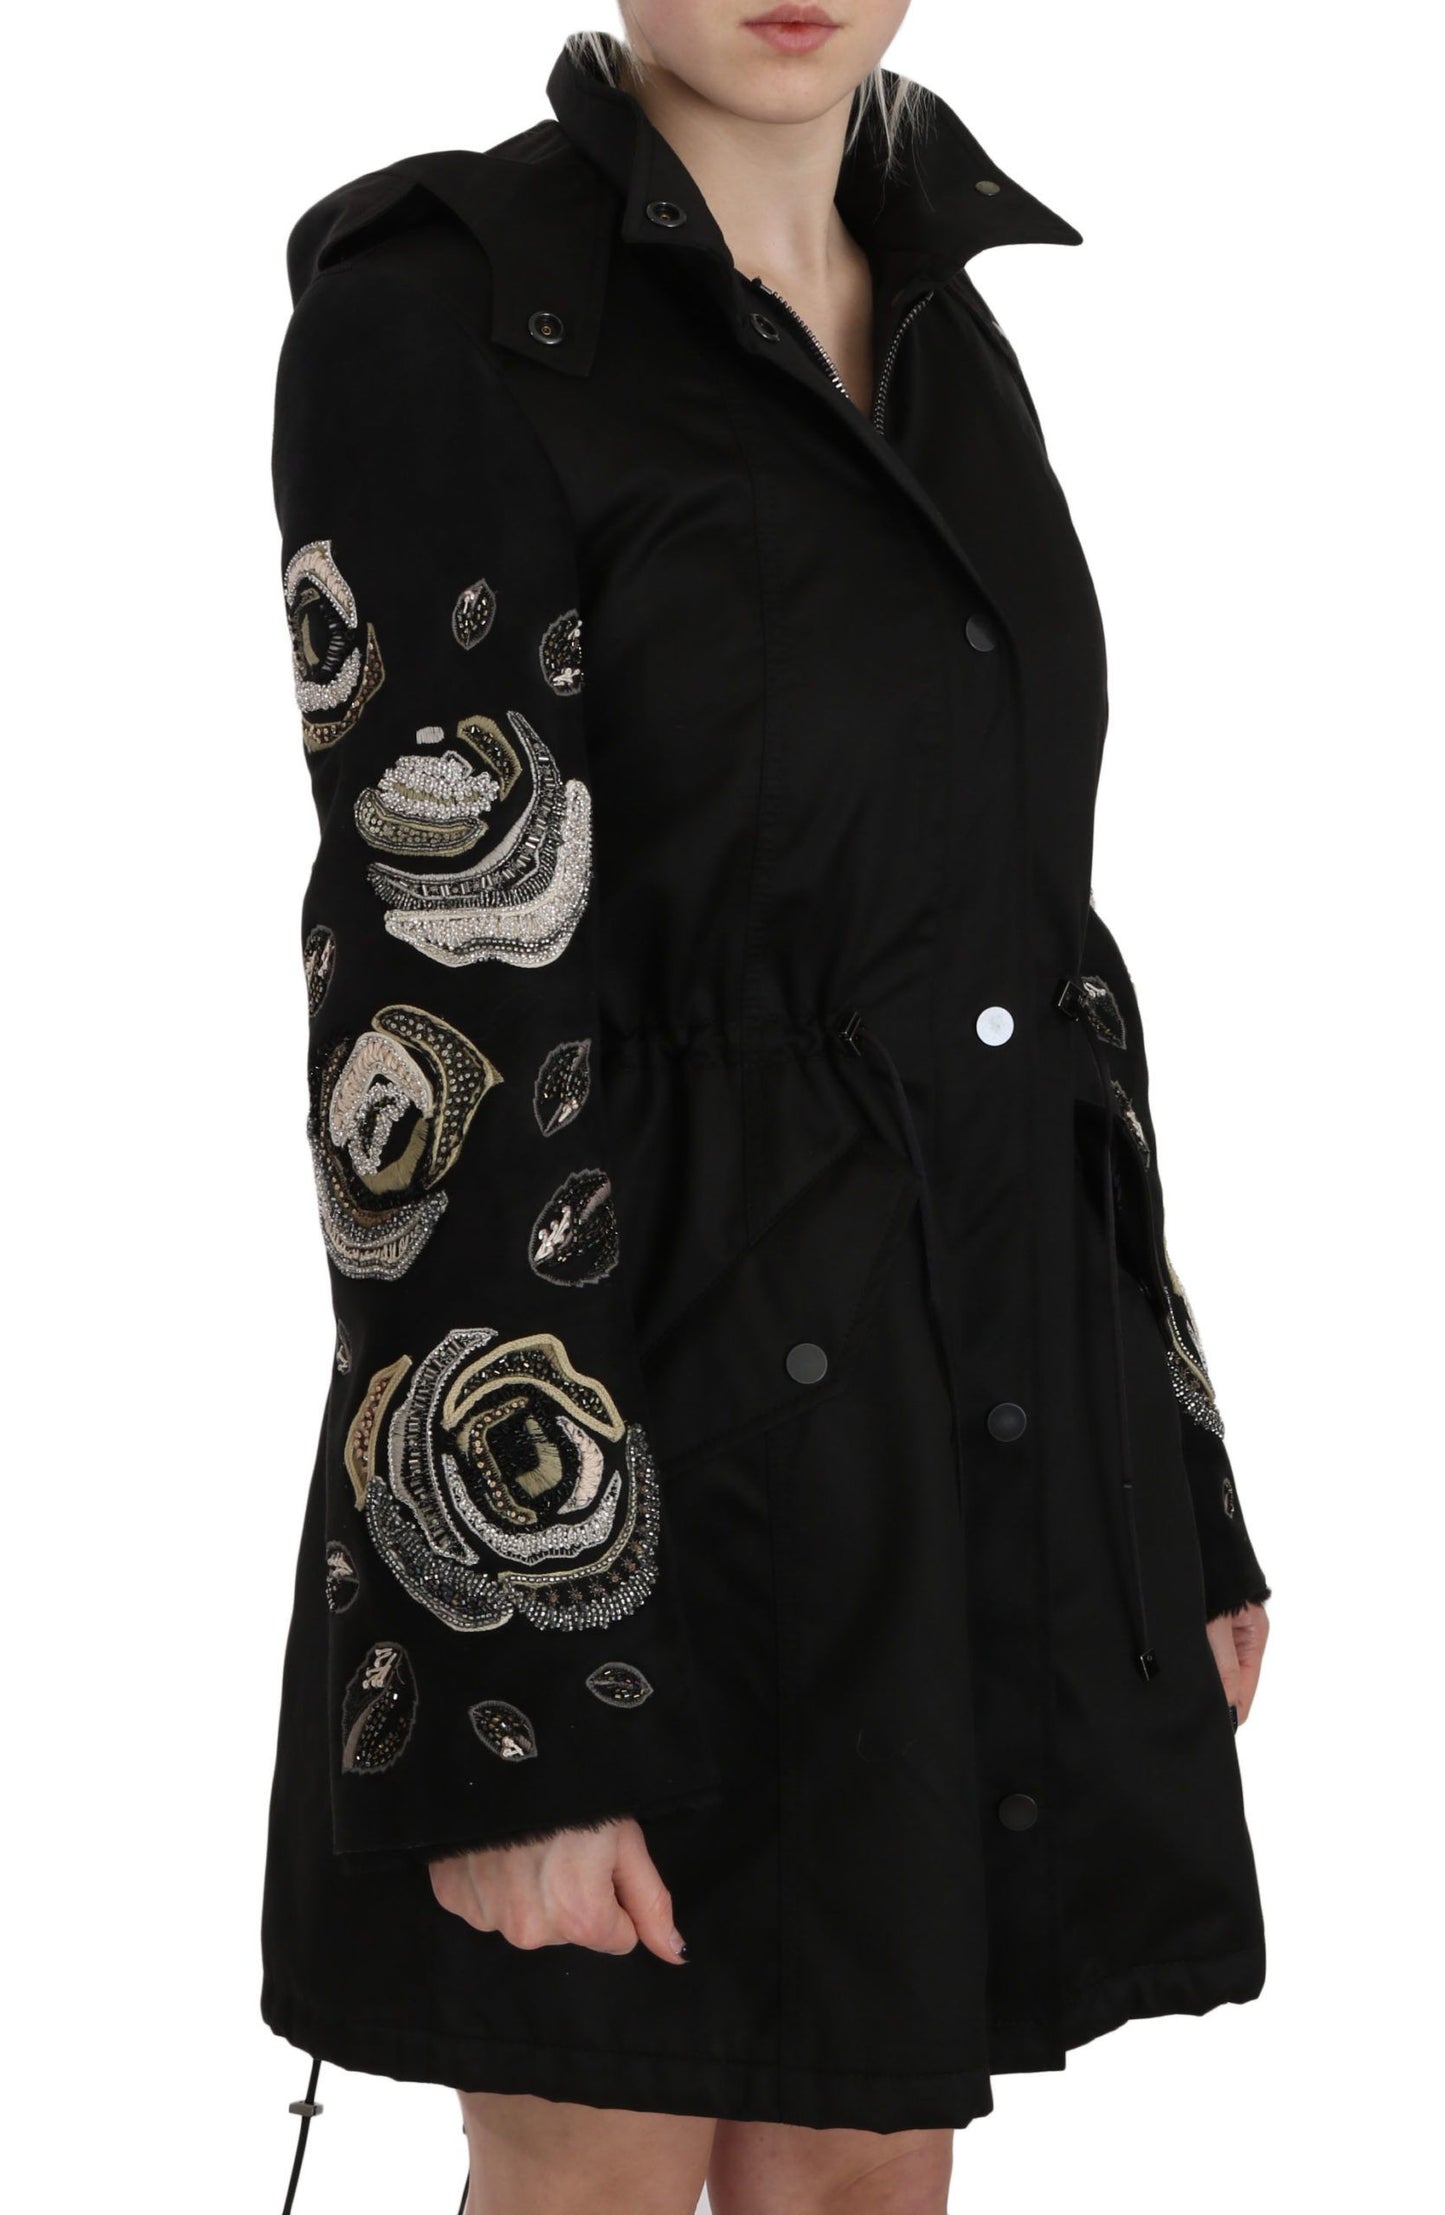 Elegant Black Beaded Parka Jacket for Women